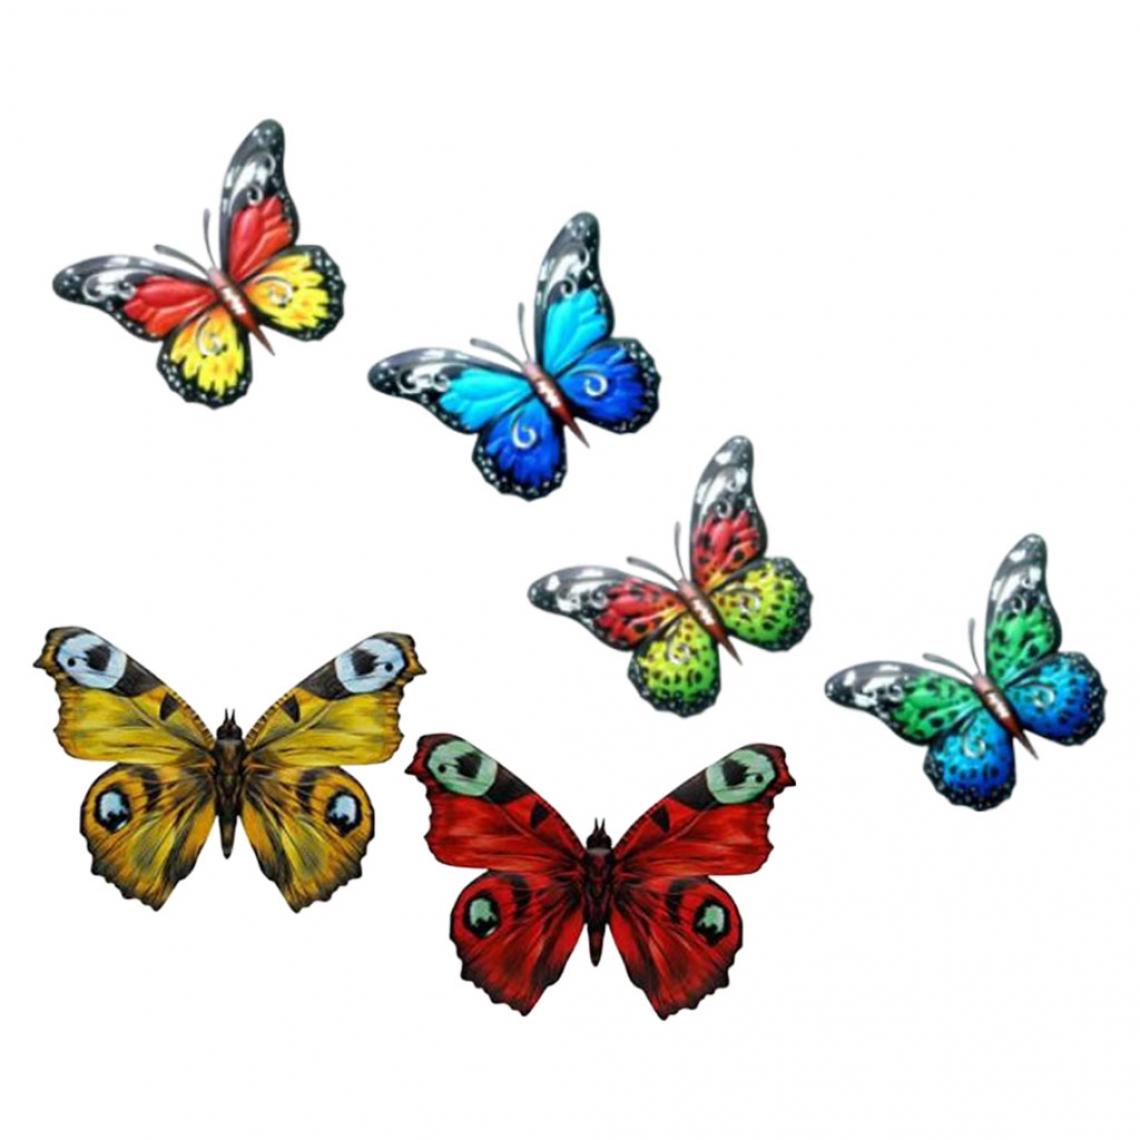 marque generique - ation murale à suspendre papillon en métal - Panneaux et treillis